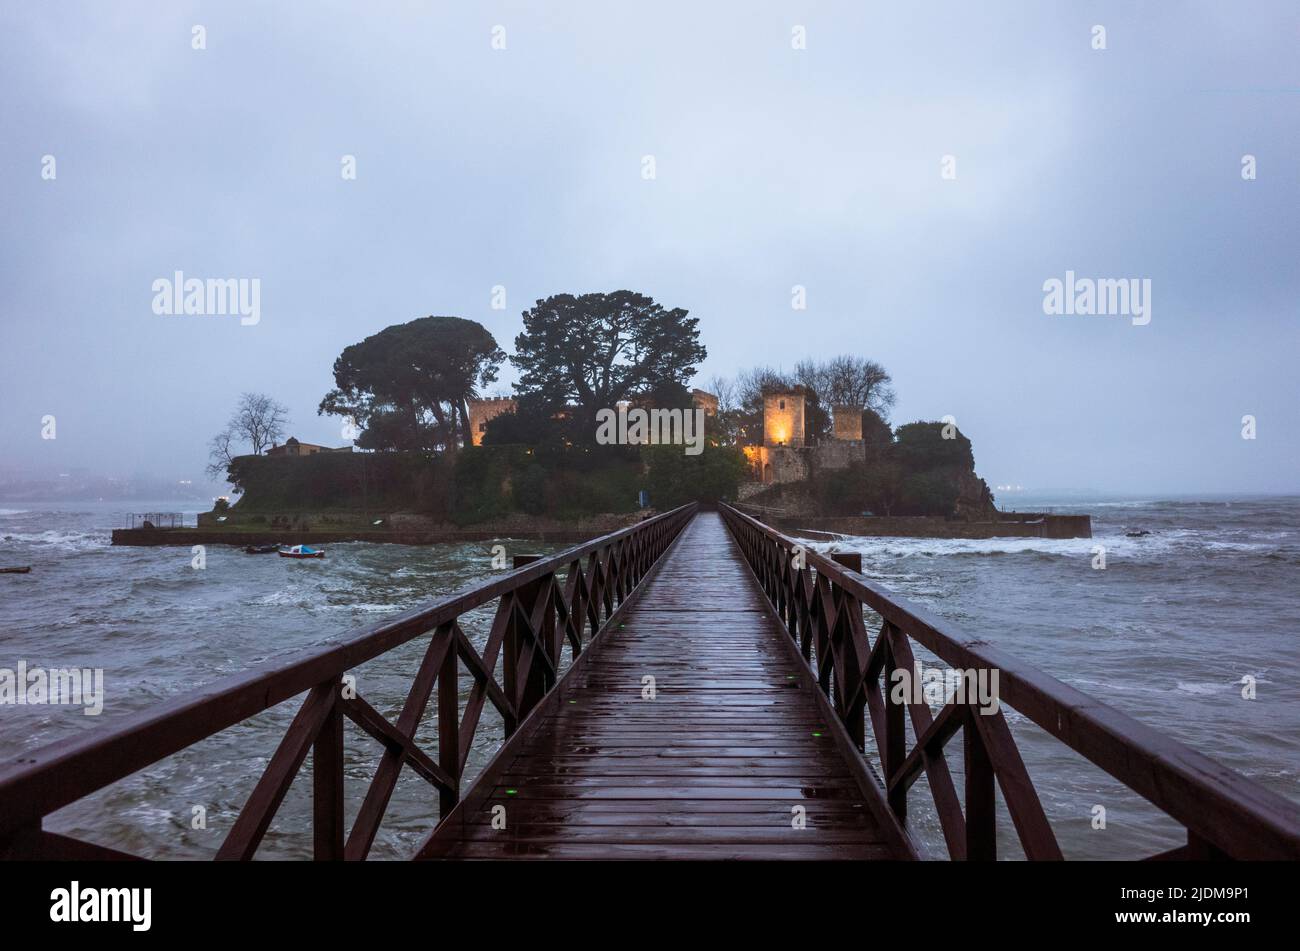 Oleiros, provincia DE A Coruña, Galicia, España - 11 de febrero de 2020 : Puente de los pies hacia el islote de Santa Cristina con el castillo iluminado de Santa Cruz en Sa Foto de stock